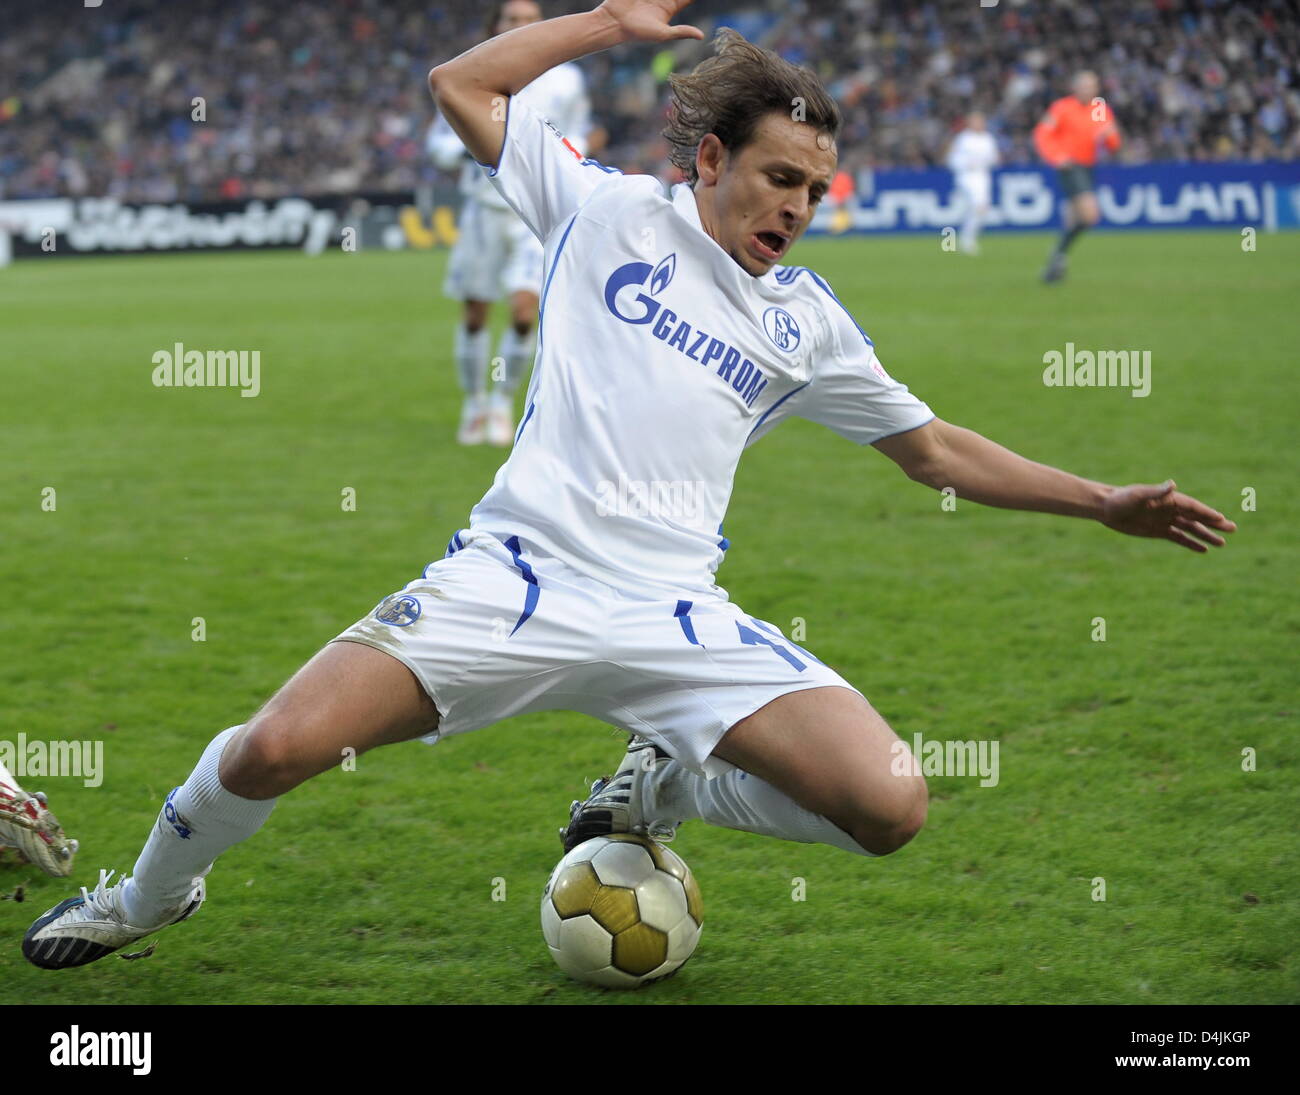 UEFA Champions League -Atlectico Madrid v Steaua Bucuresti. Philips , Board  Stock Photo - Alamy